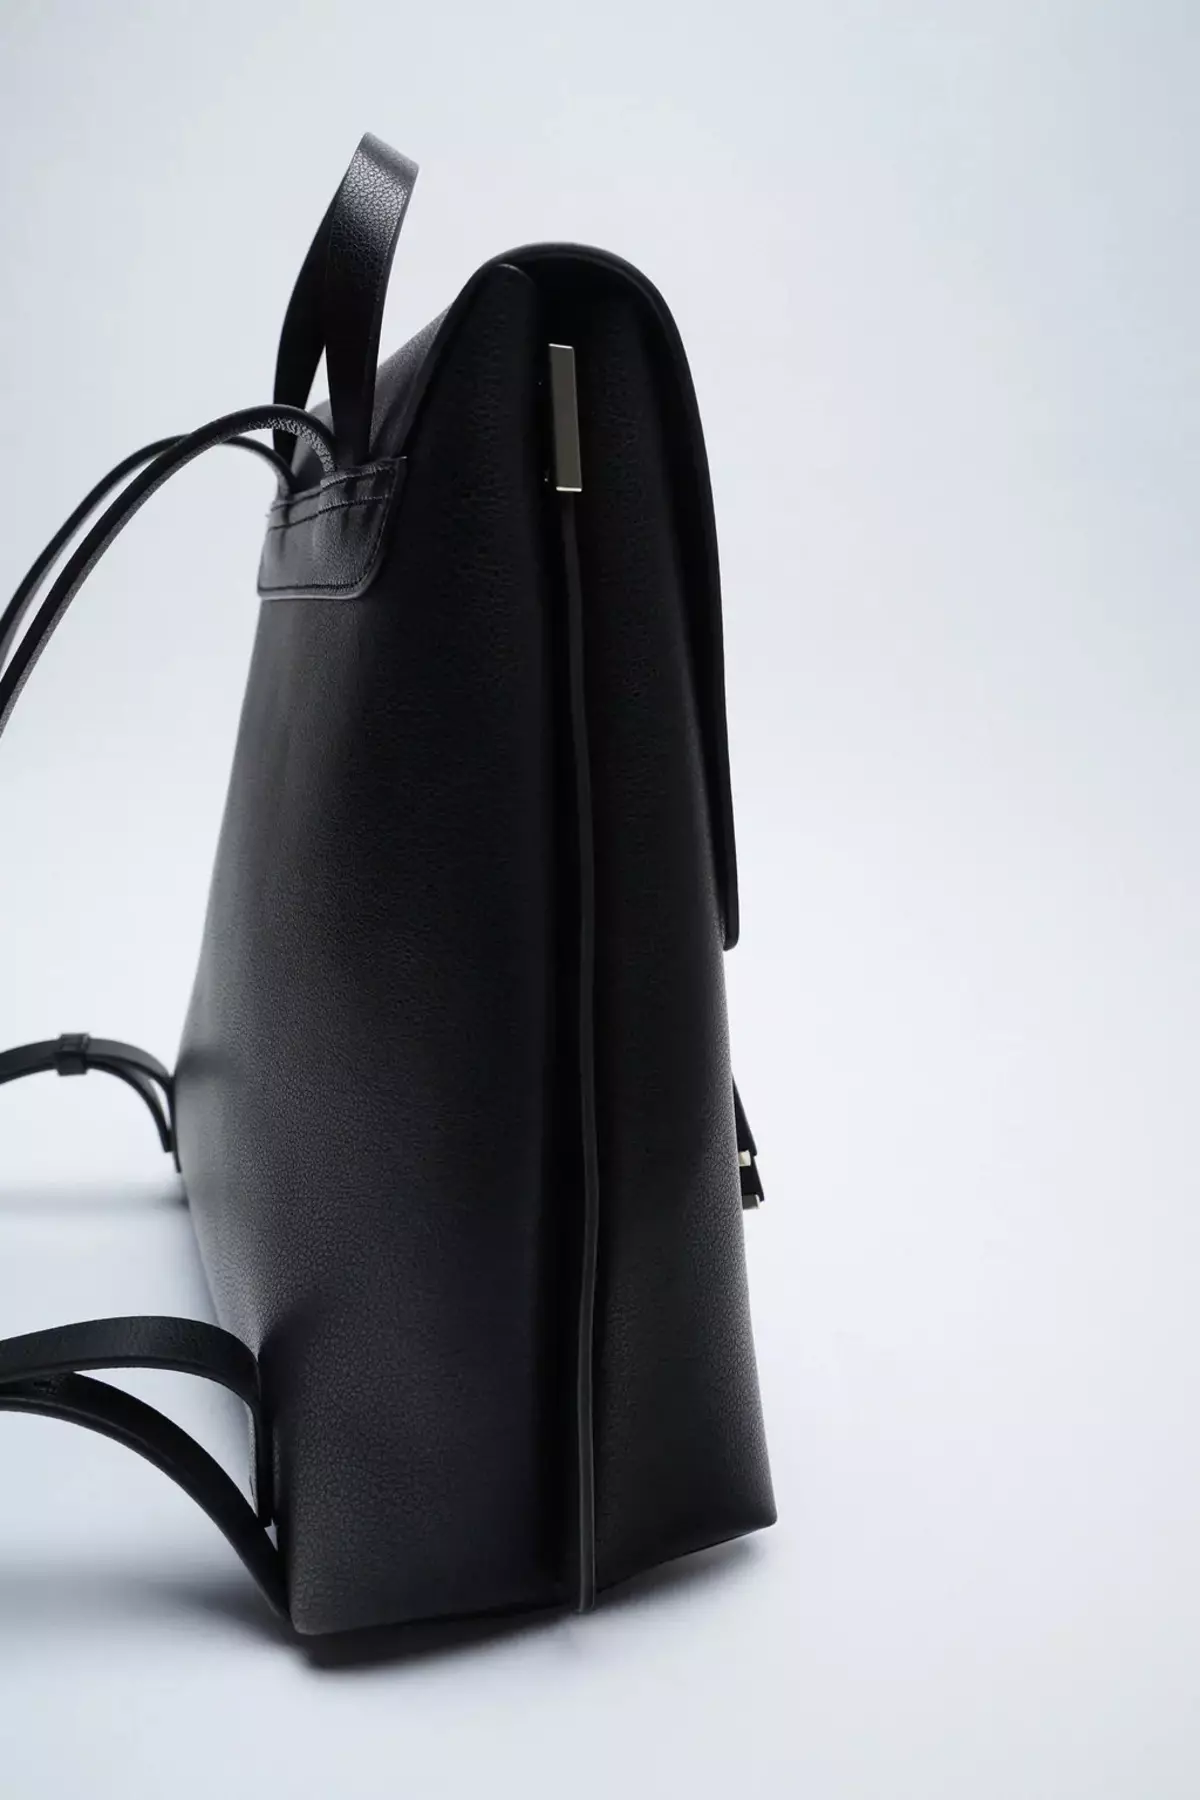 Zara backpacks: ຜູ້ຍິງສີດໍາ, ເດັກນ້ອຍສໍາລັບເດັກນ້ອຍ, ສີຂີ້ເຖົ່າແລະສີແດງ, ພ້ອມທັງແບບກະເປົາຂອງກະເປົາຈາກບໍລິສັດ. ສິ່ງທີ່ດີທີ່ສຸດທີ່ຈະໃສ່? 15437_26